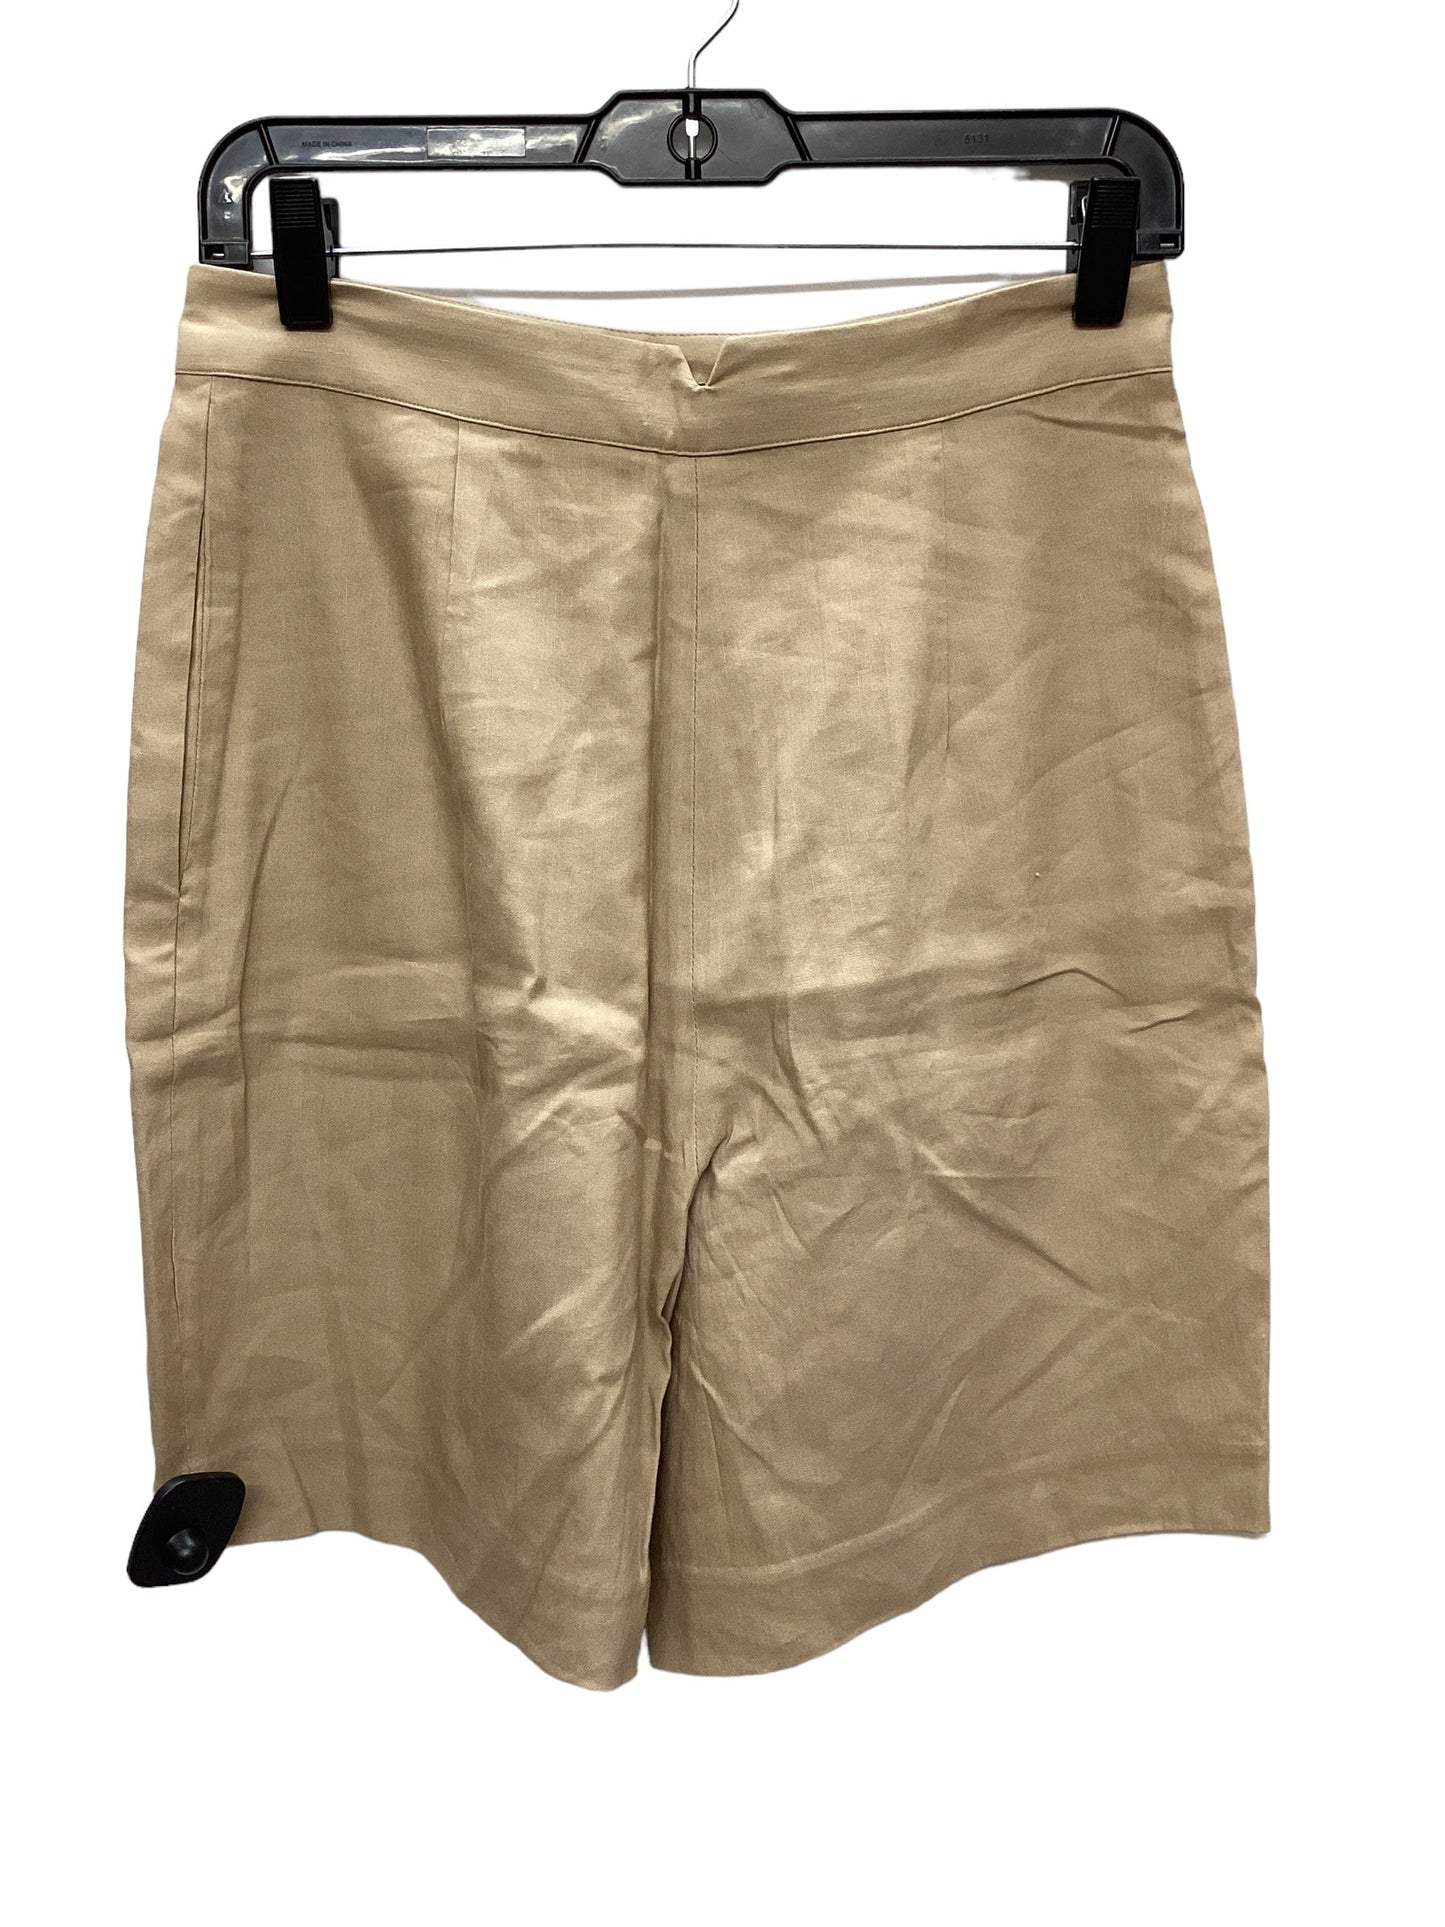 Shorts By Antonio Melani  Size: 4